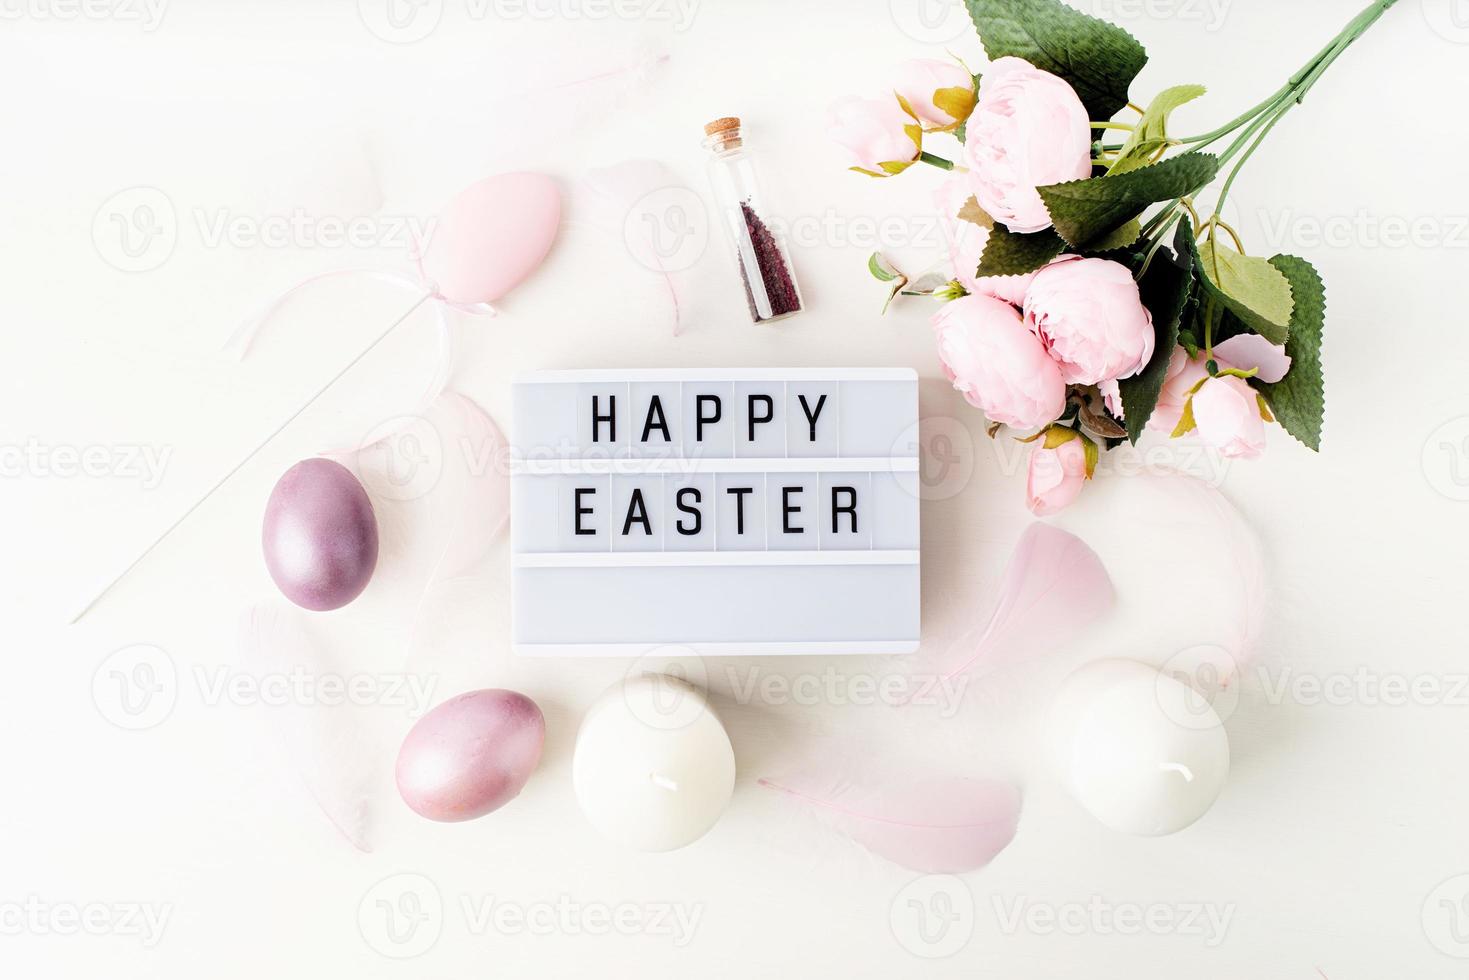 Feliz Páscoa, caixa de luz decorada com penas e ovos em tons pastéis foto